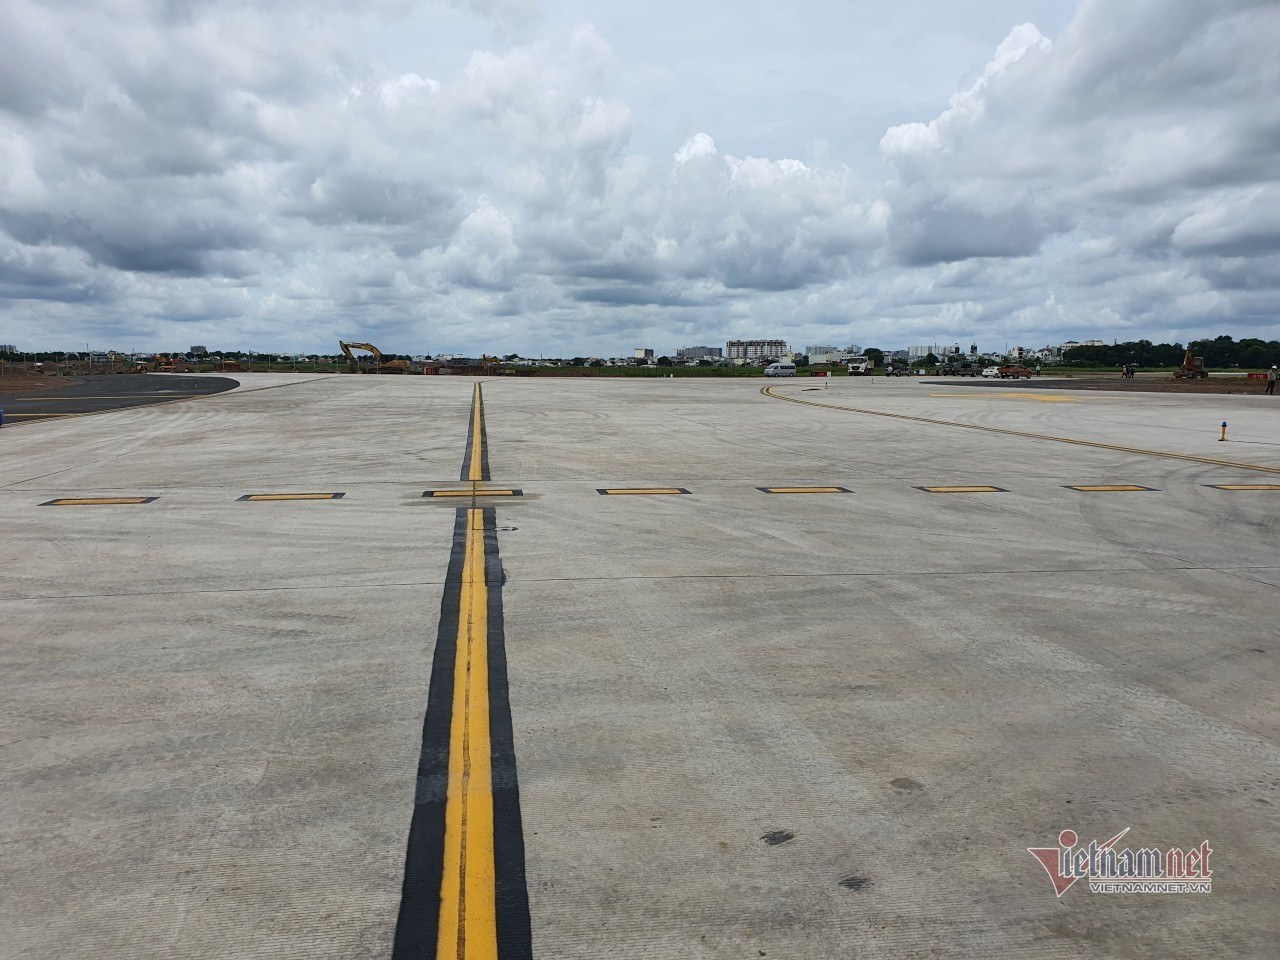 Hai đường lăn sân bay Tân Sơn Nhất hoàn thành sau 5 tháng cải tạo